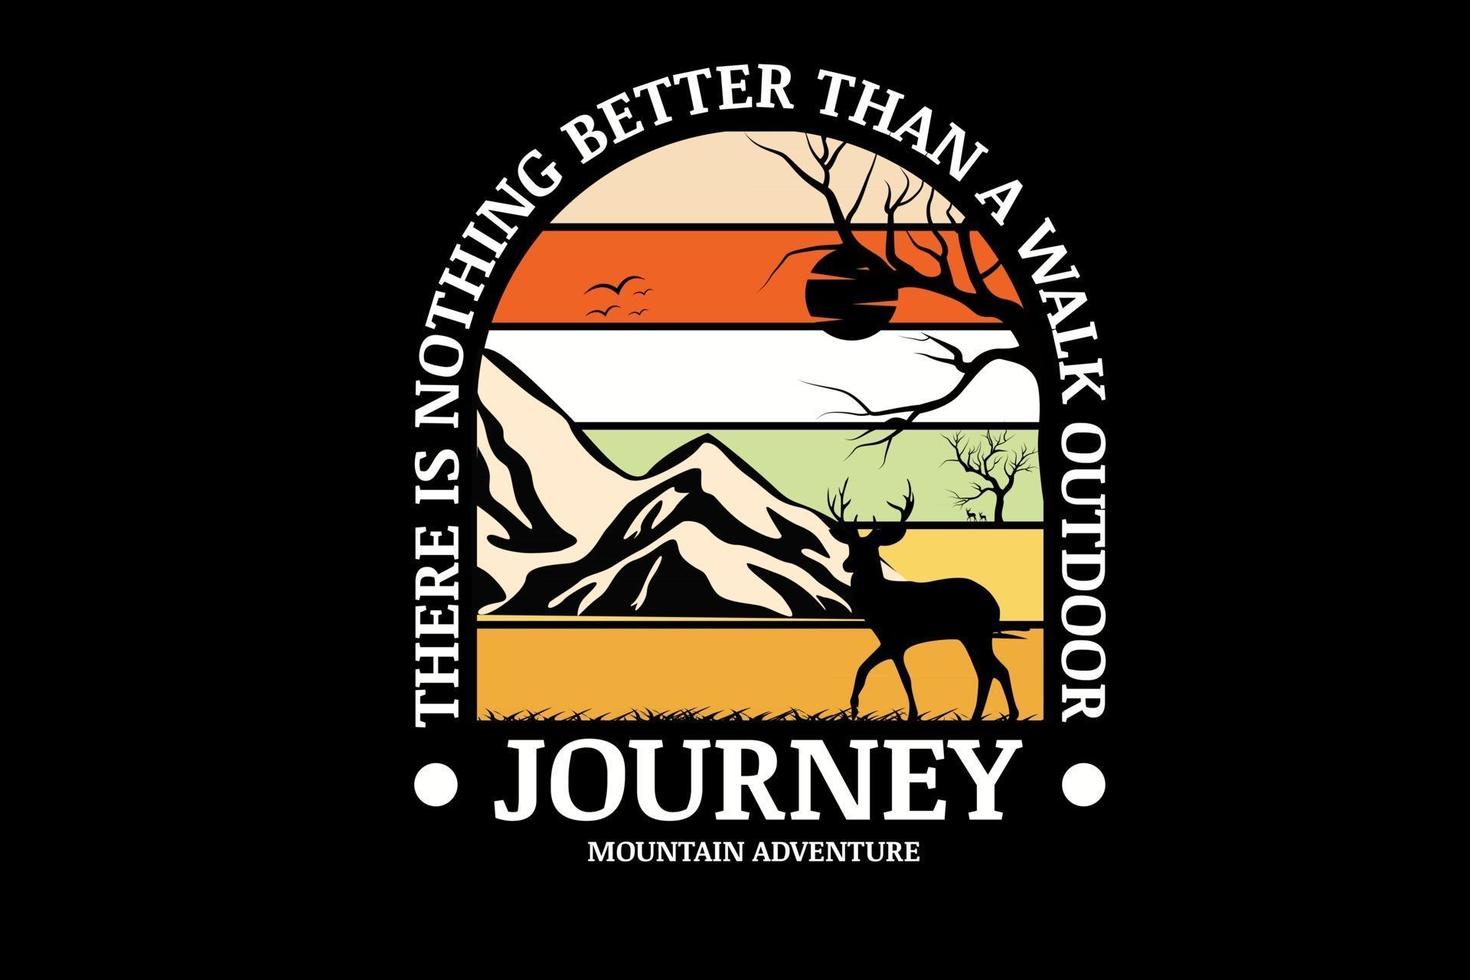 viaje montaña aventura color crema naranja blanco y amarillo vector